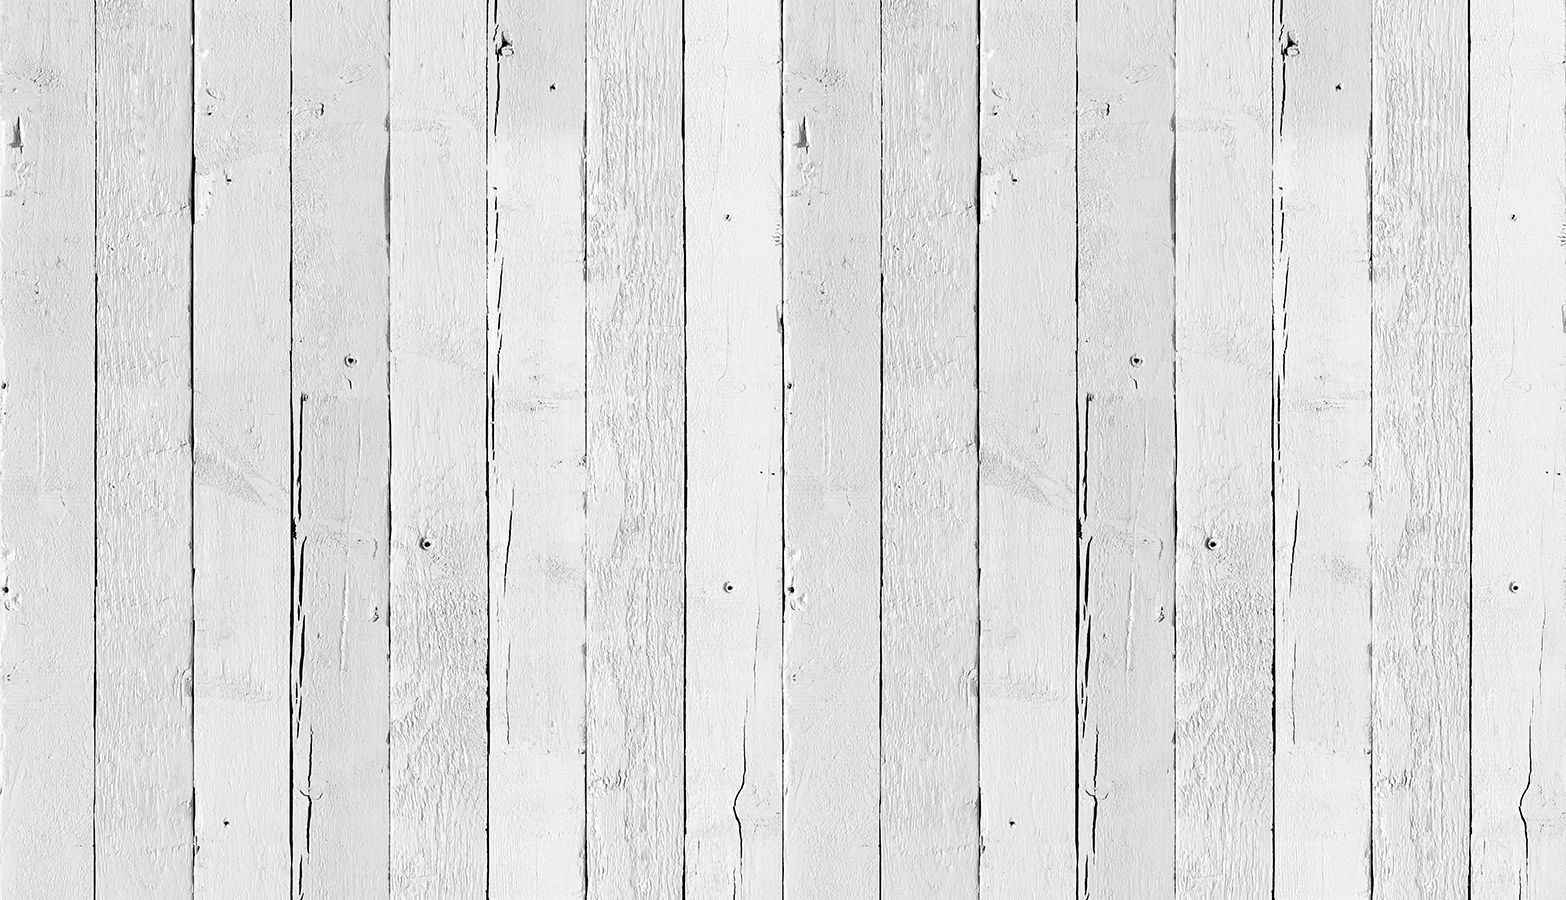 Fondos de madera blanca - Los mejores fondos de madera blanca gratis